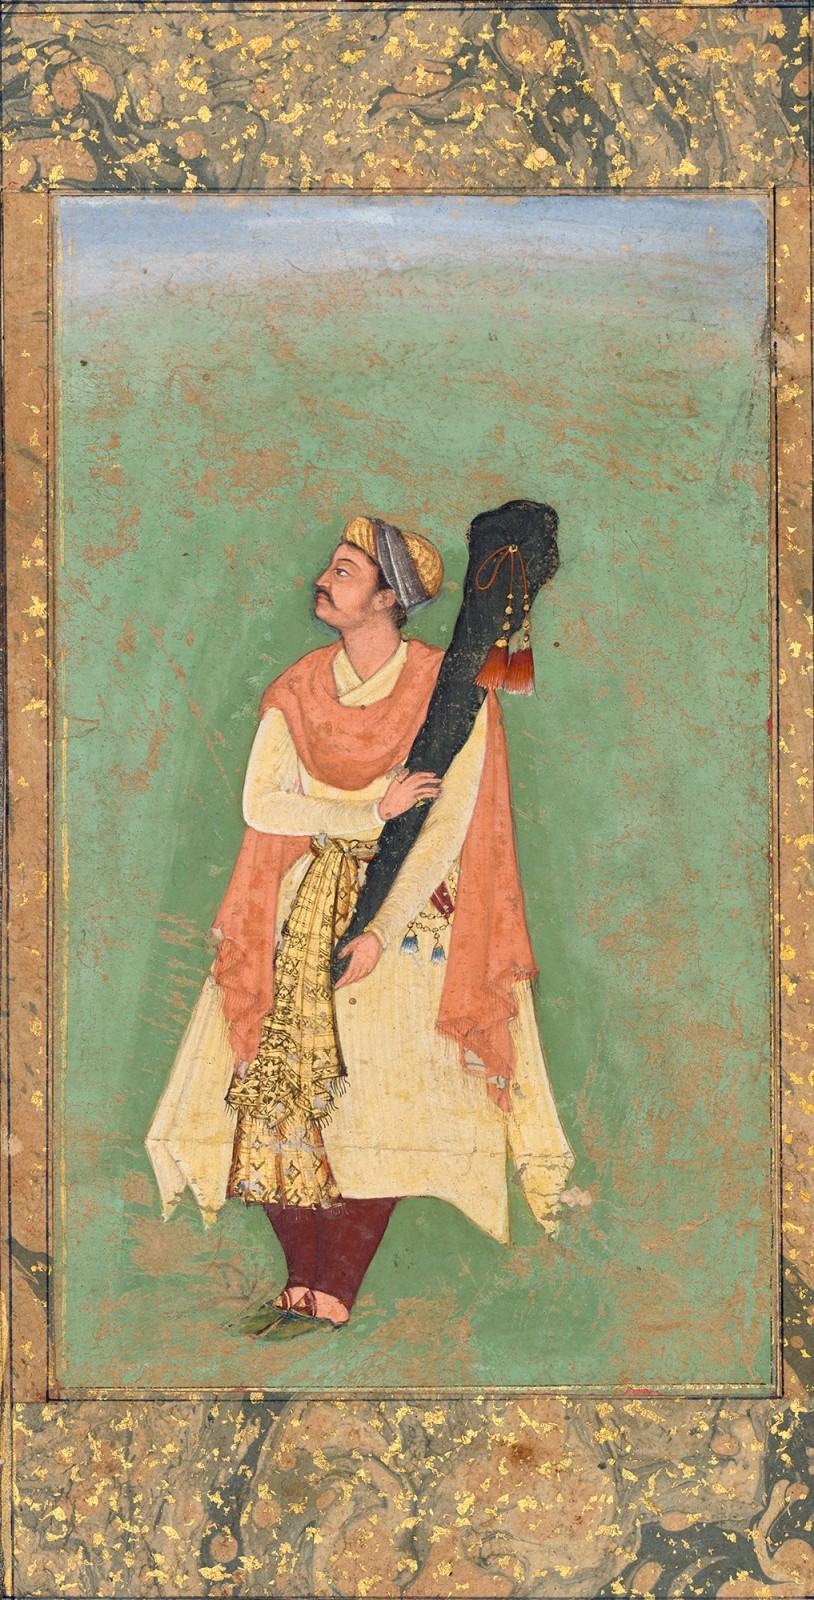 A swordbearer, Mughal, c. 1590